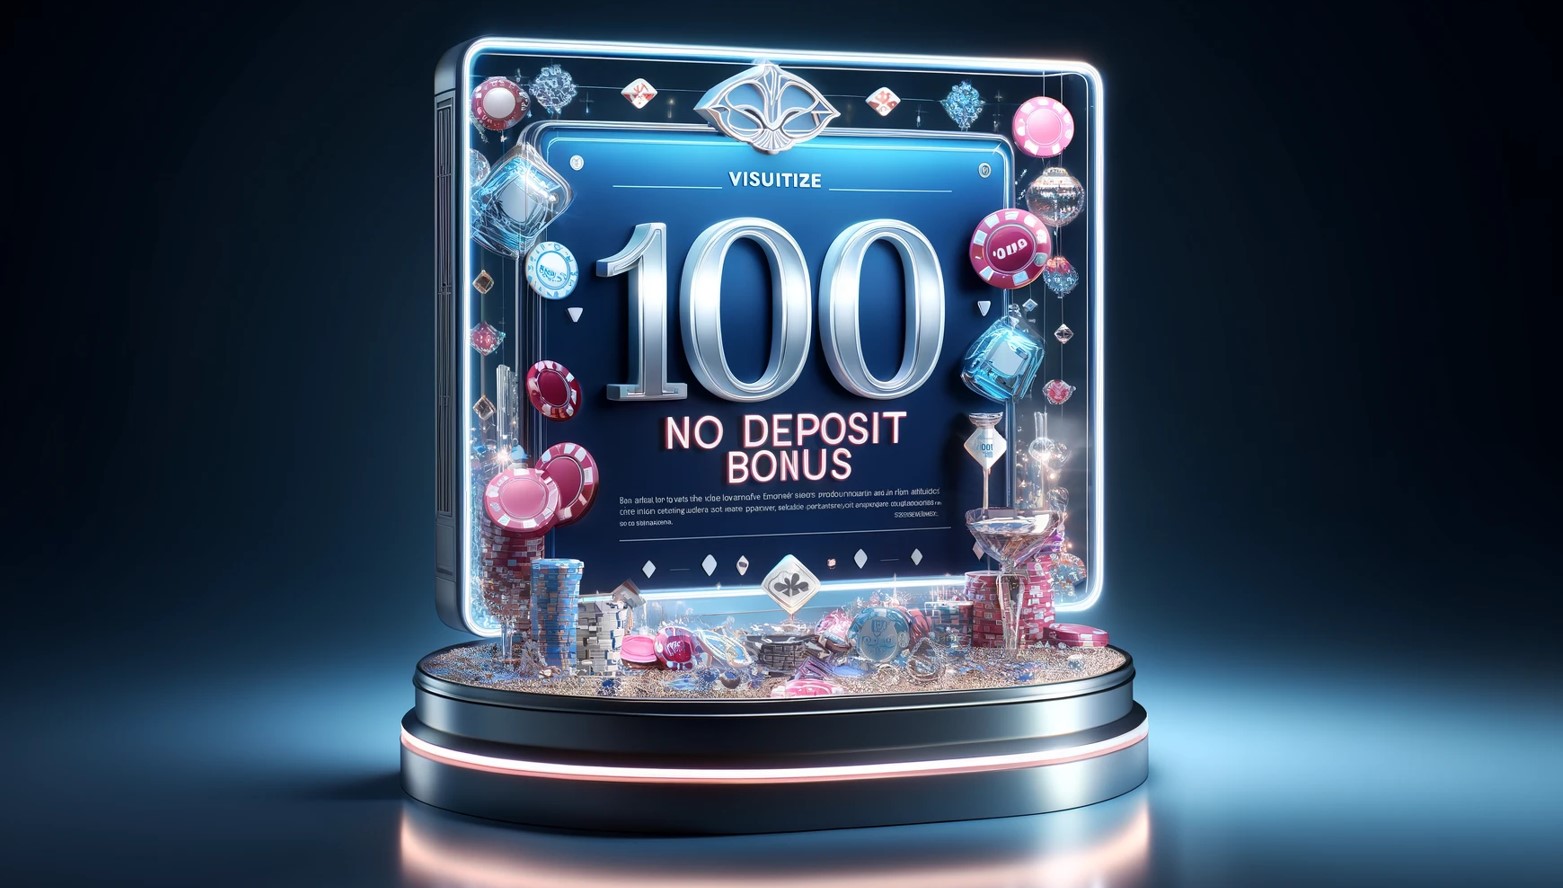 Las Atlantis casino 100 no deposit bonus 2